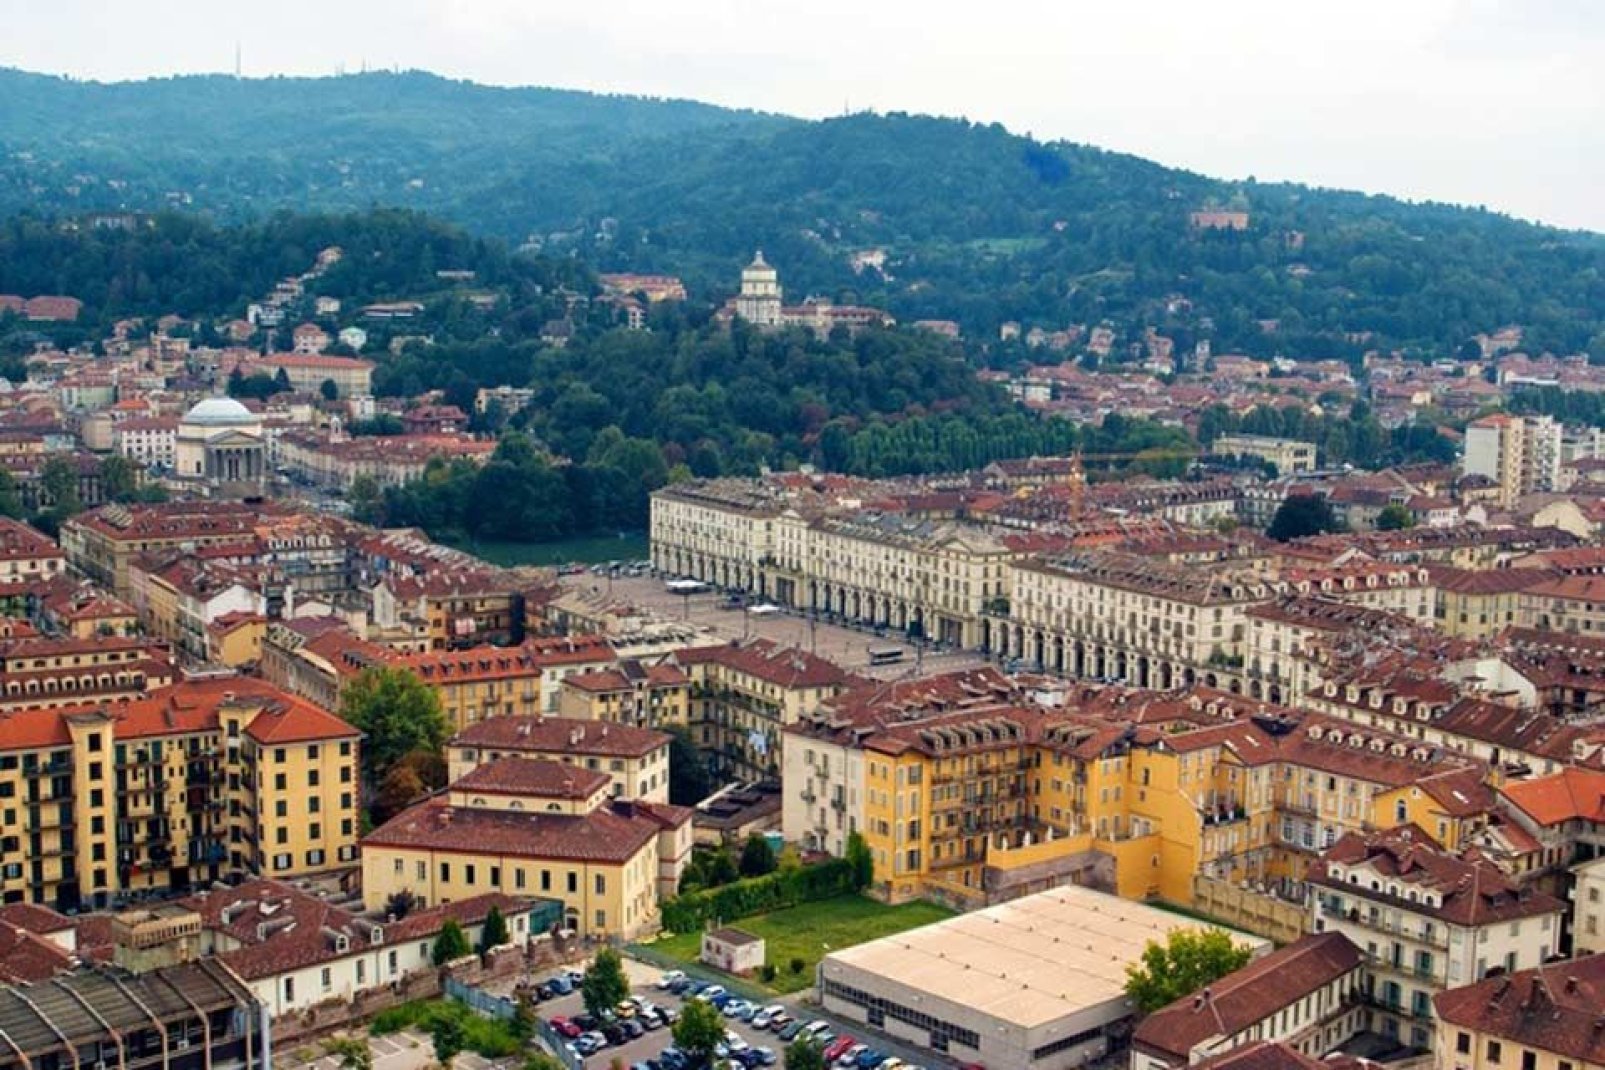 Torino dall'alto: si scorge il Palazzo Reale.